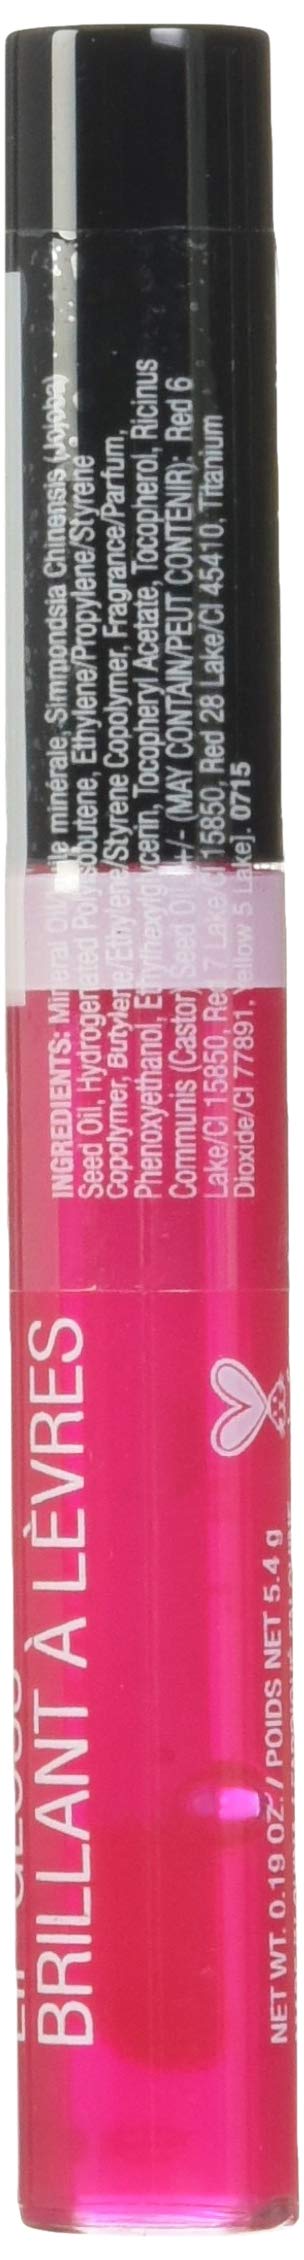 [Australia] - wet n wild Megaslicks Lip Gloss, Cotton Candy, 0.19 Ounce 